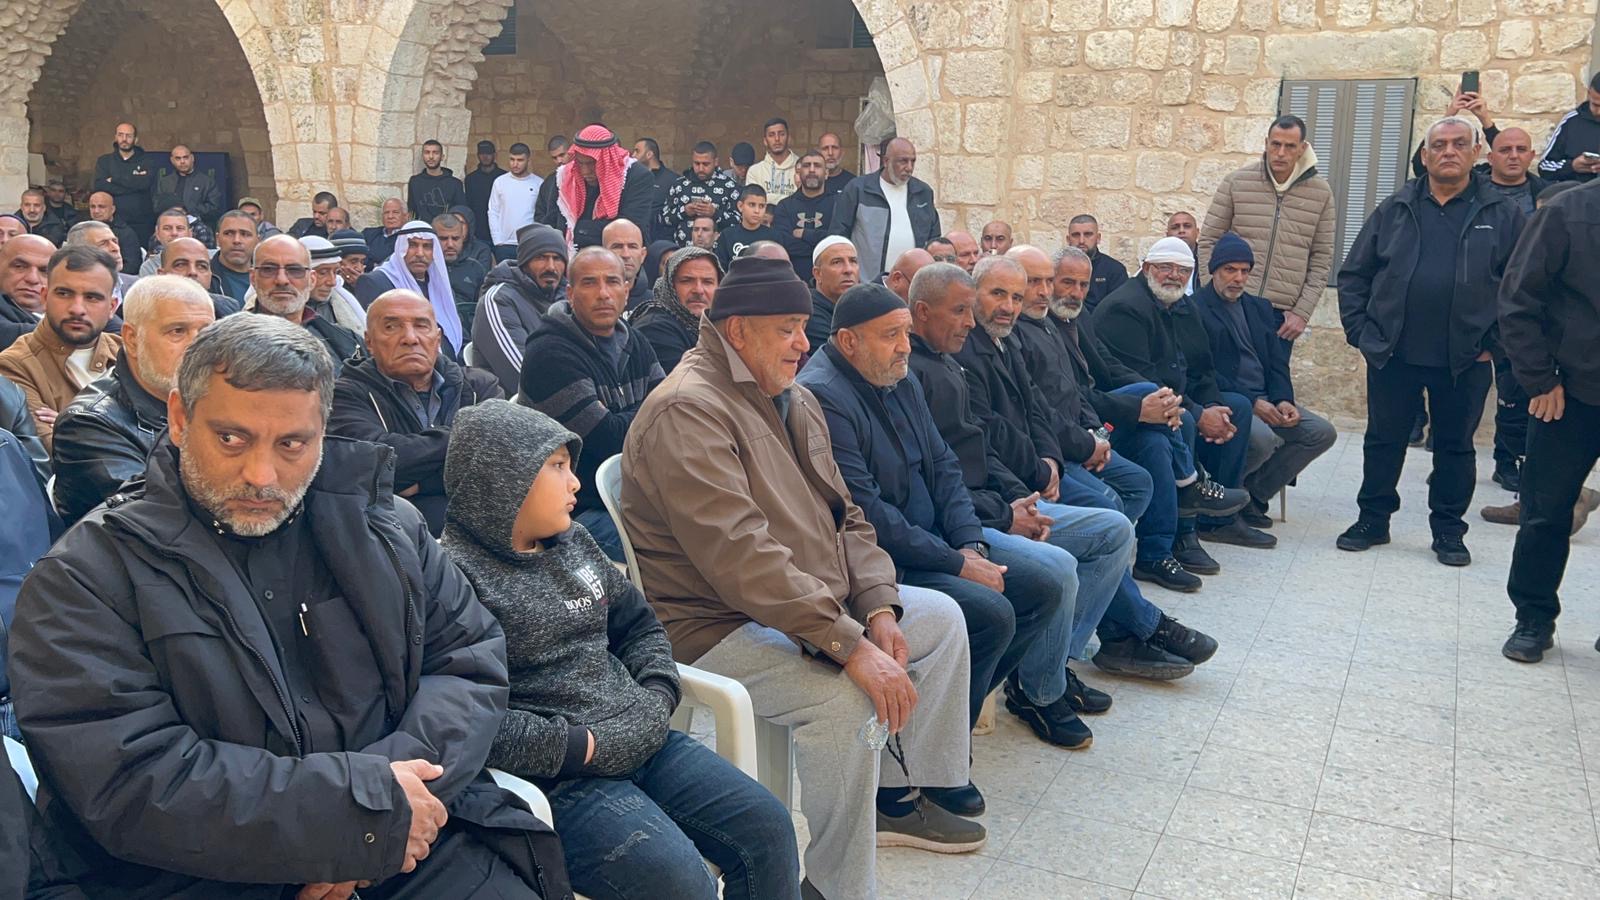 اللد: عقد راية الصلح بين عائلتي شعبان والزبارقة في المسجد الكبير 